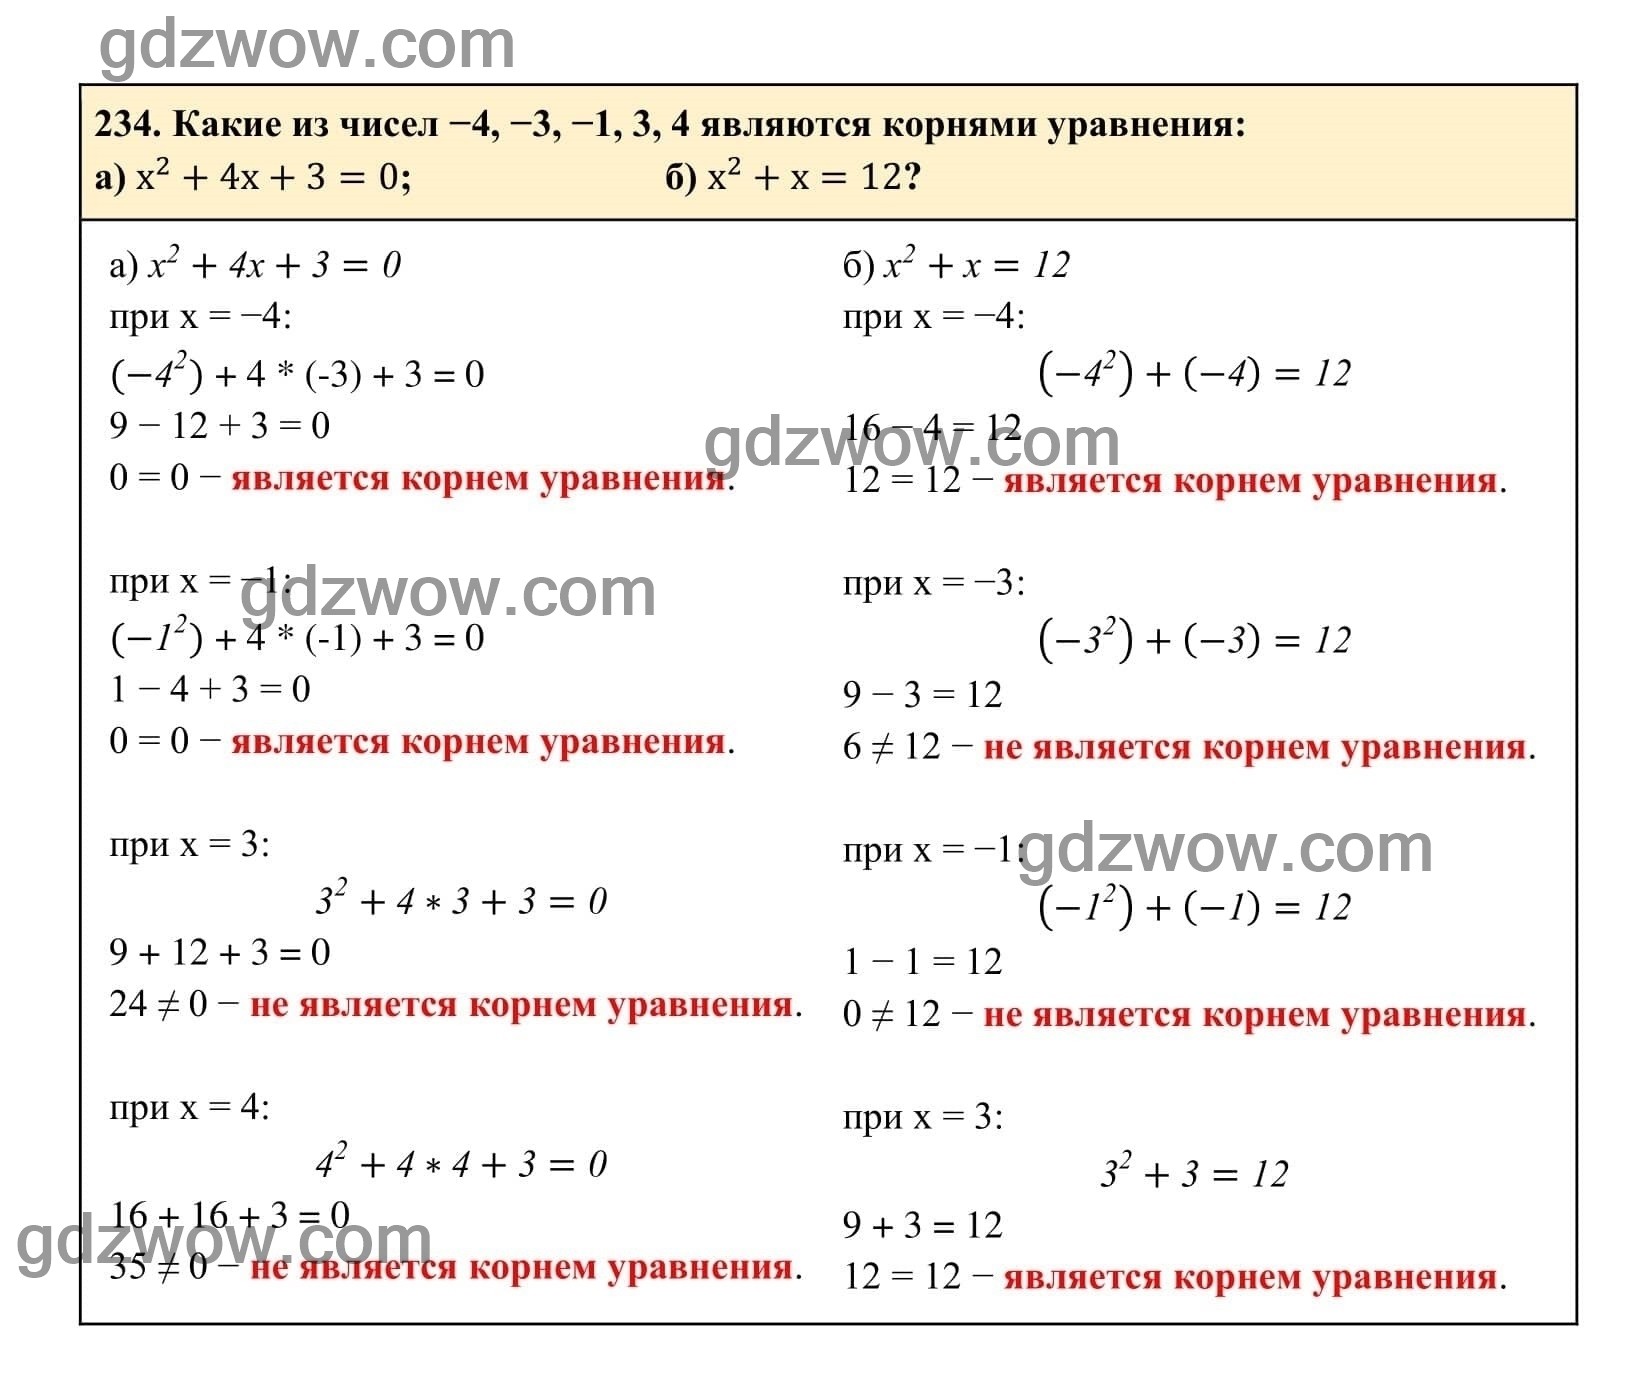 Упражнение 234 - ГДЗ по Алгебре 7 класс Учебник Макарычев (решебник) - GDZwow